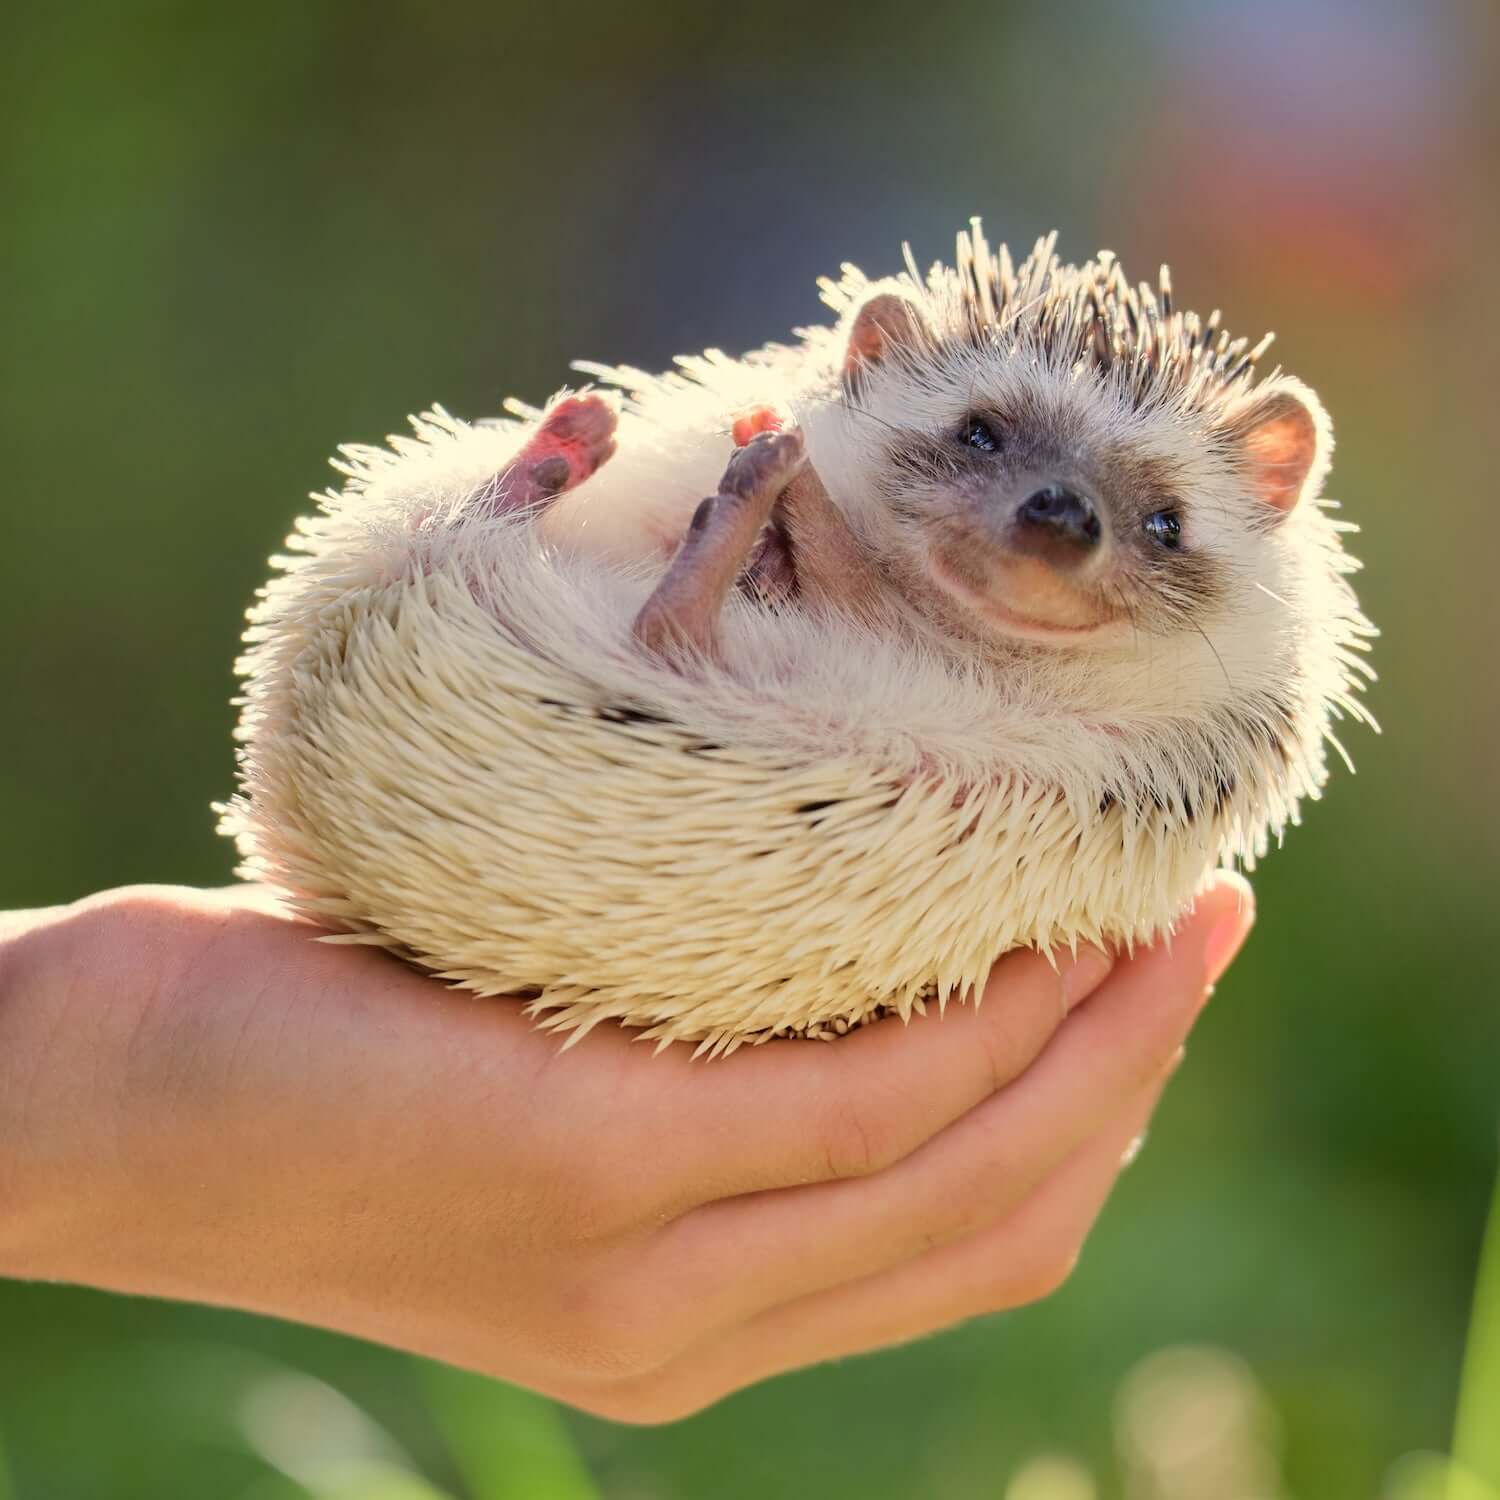 Human holding a Hedgehog